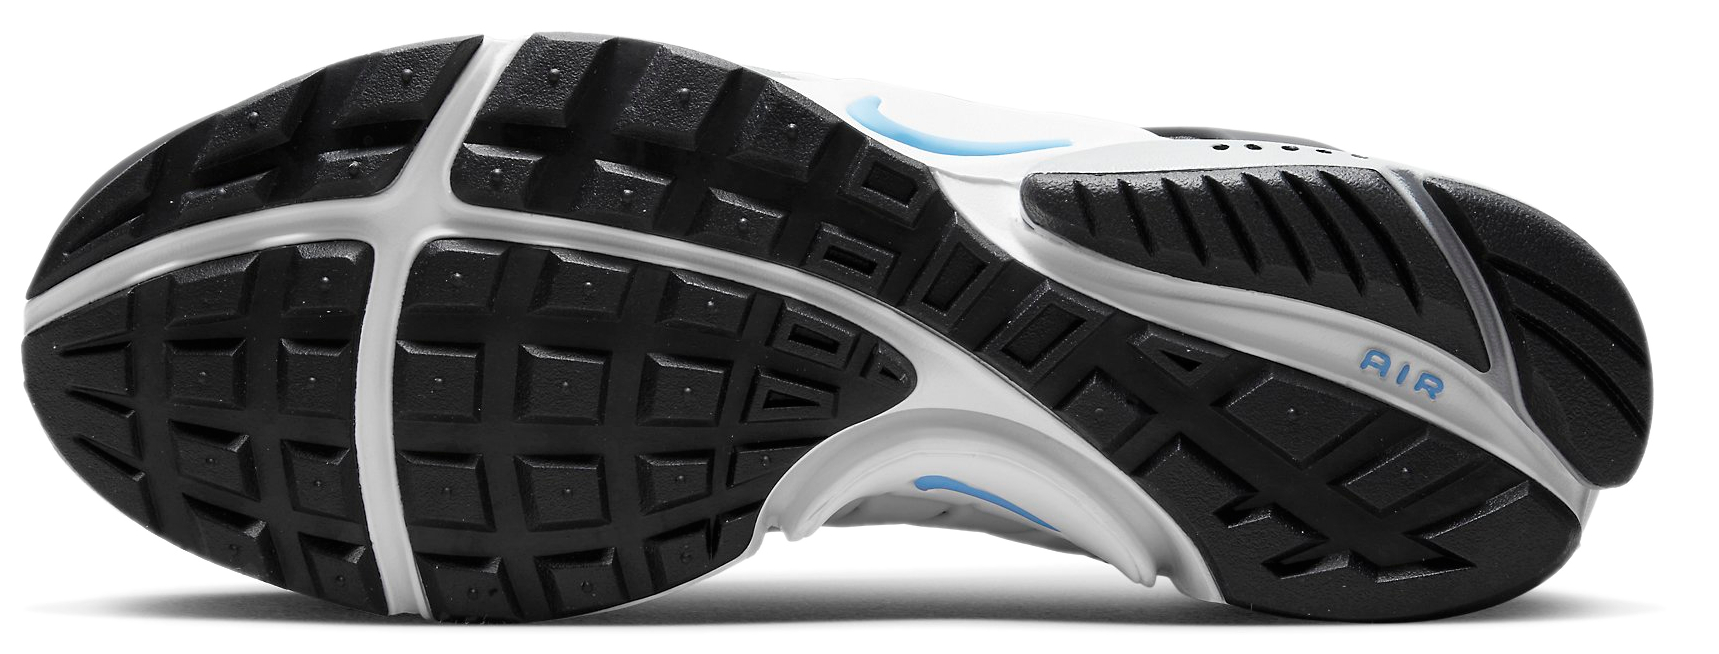 Zapatillas Nike Air Presto Utility - Top4Running.es